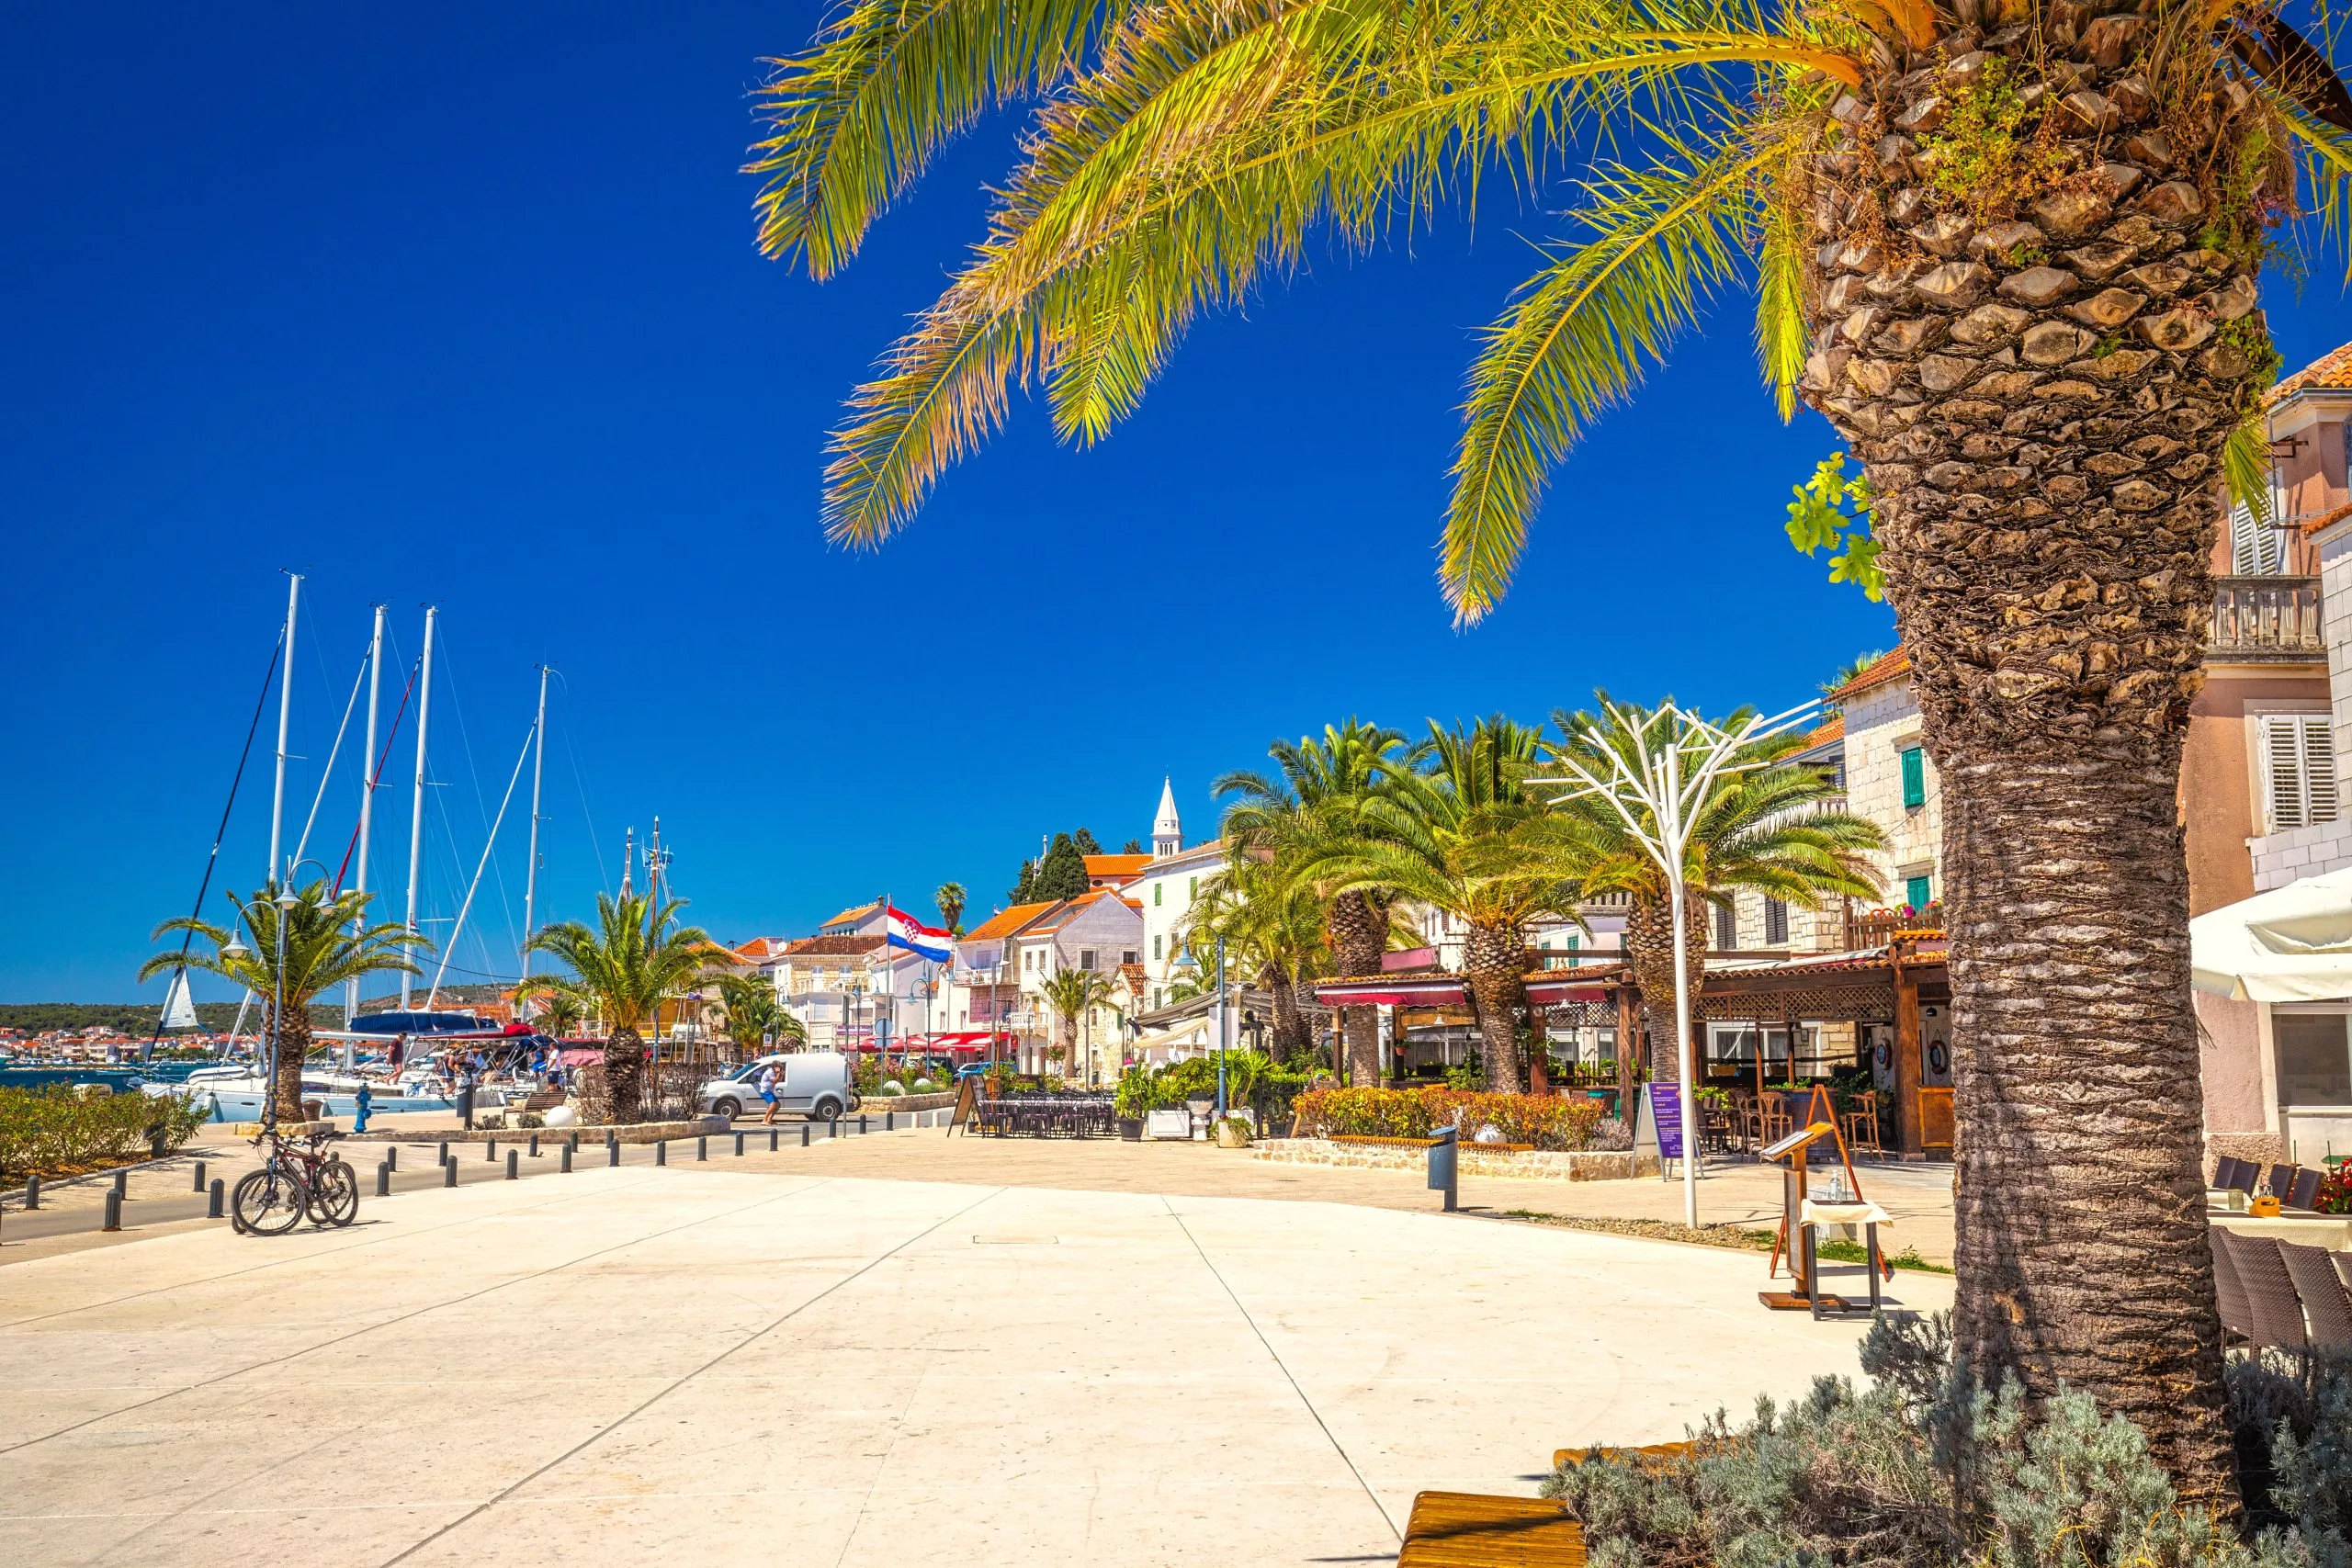 Het dorp Rogoznica, een populaire toeristische bestemming aan de Dalmatische kust van de Adriatische zee in Kroatië, Europa.